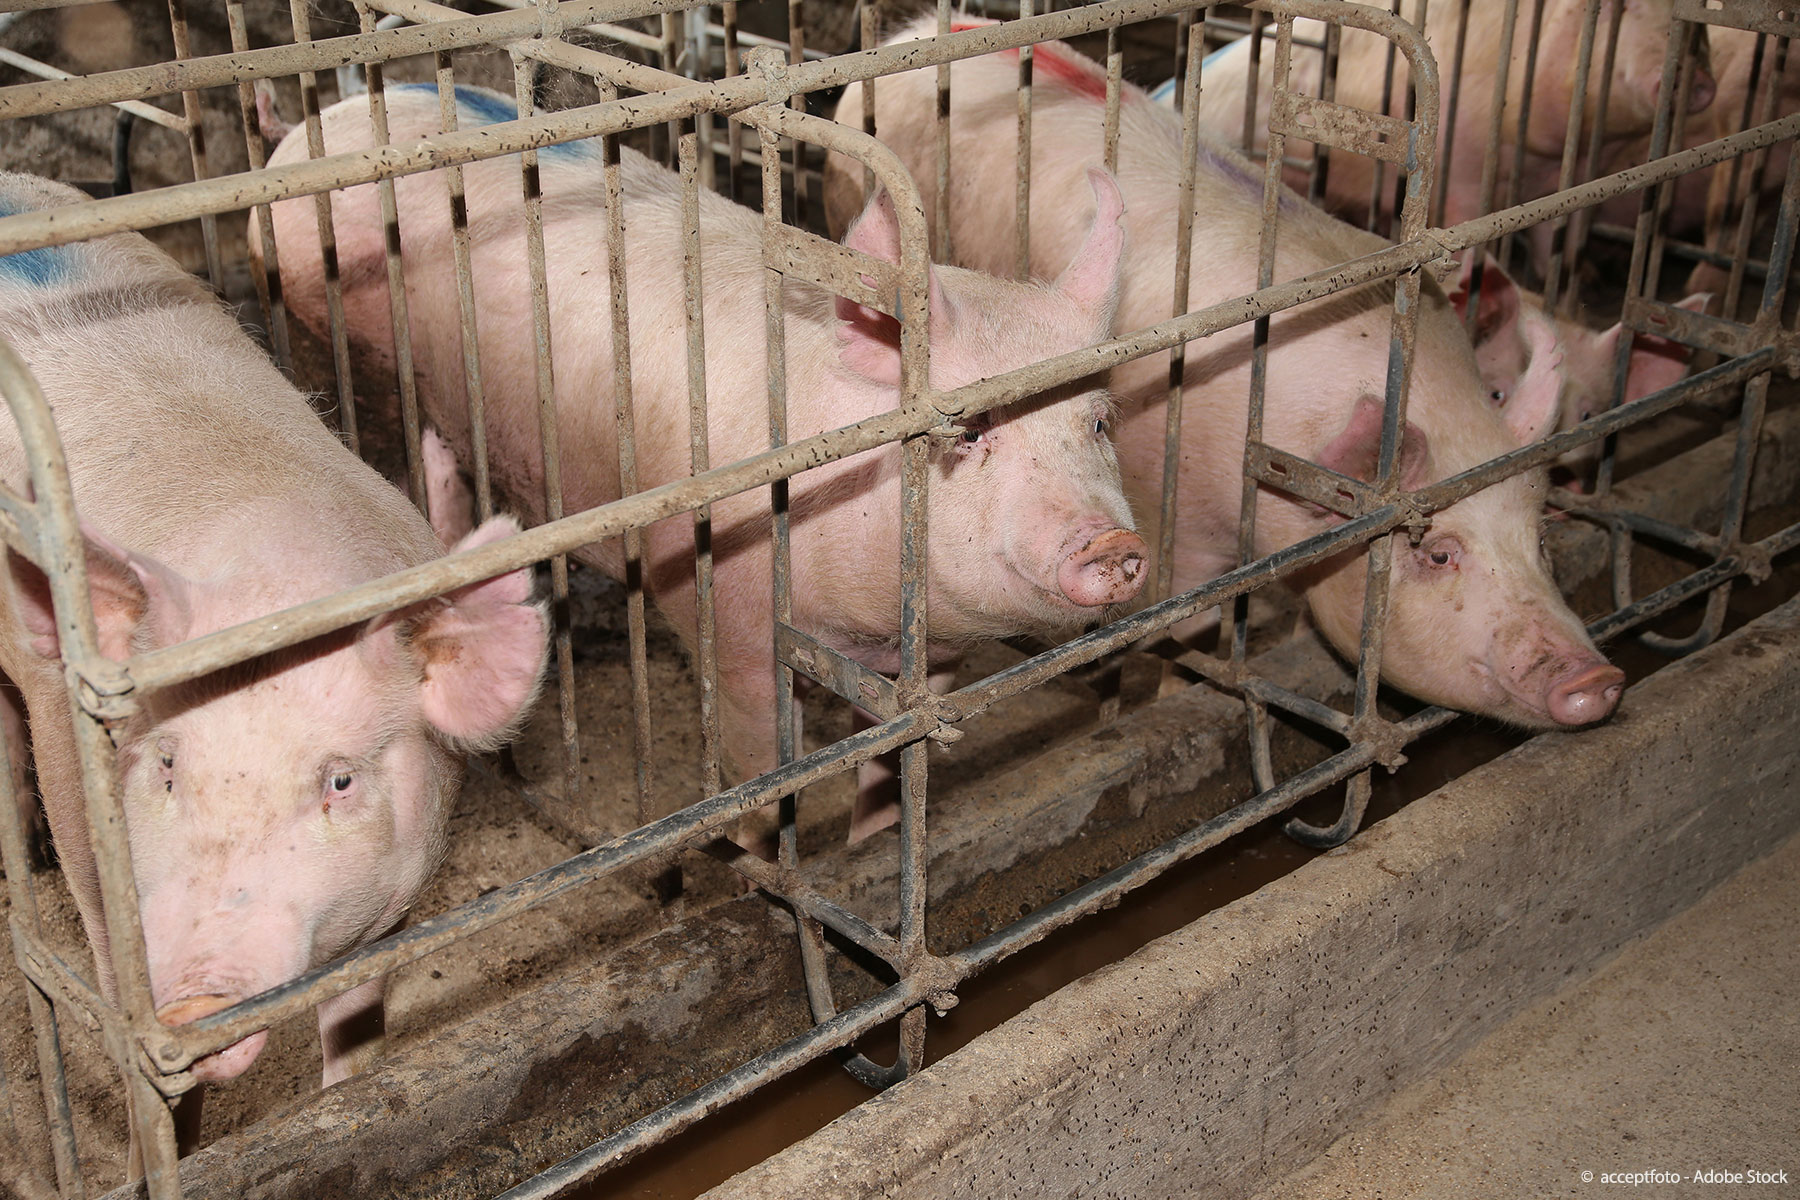 Το ΕΚ υπέρ της πρωτοβουλίας πολιτών για σταδιακή κατάργηση των κλουβιών στην κτηνοτροφία